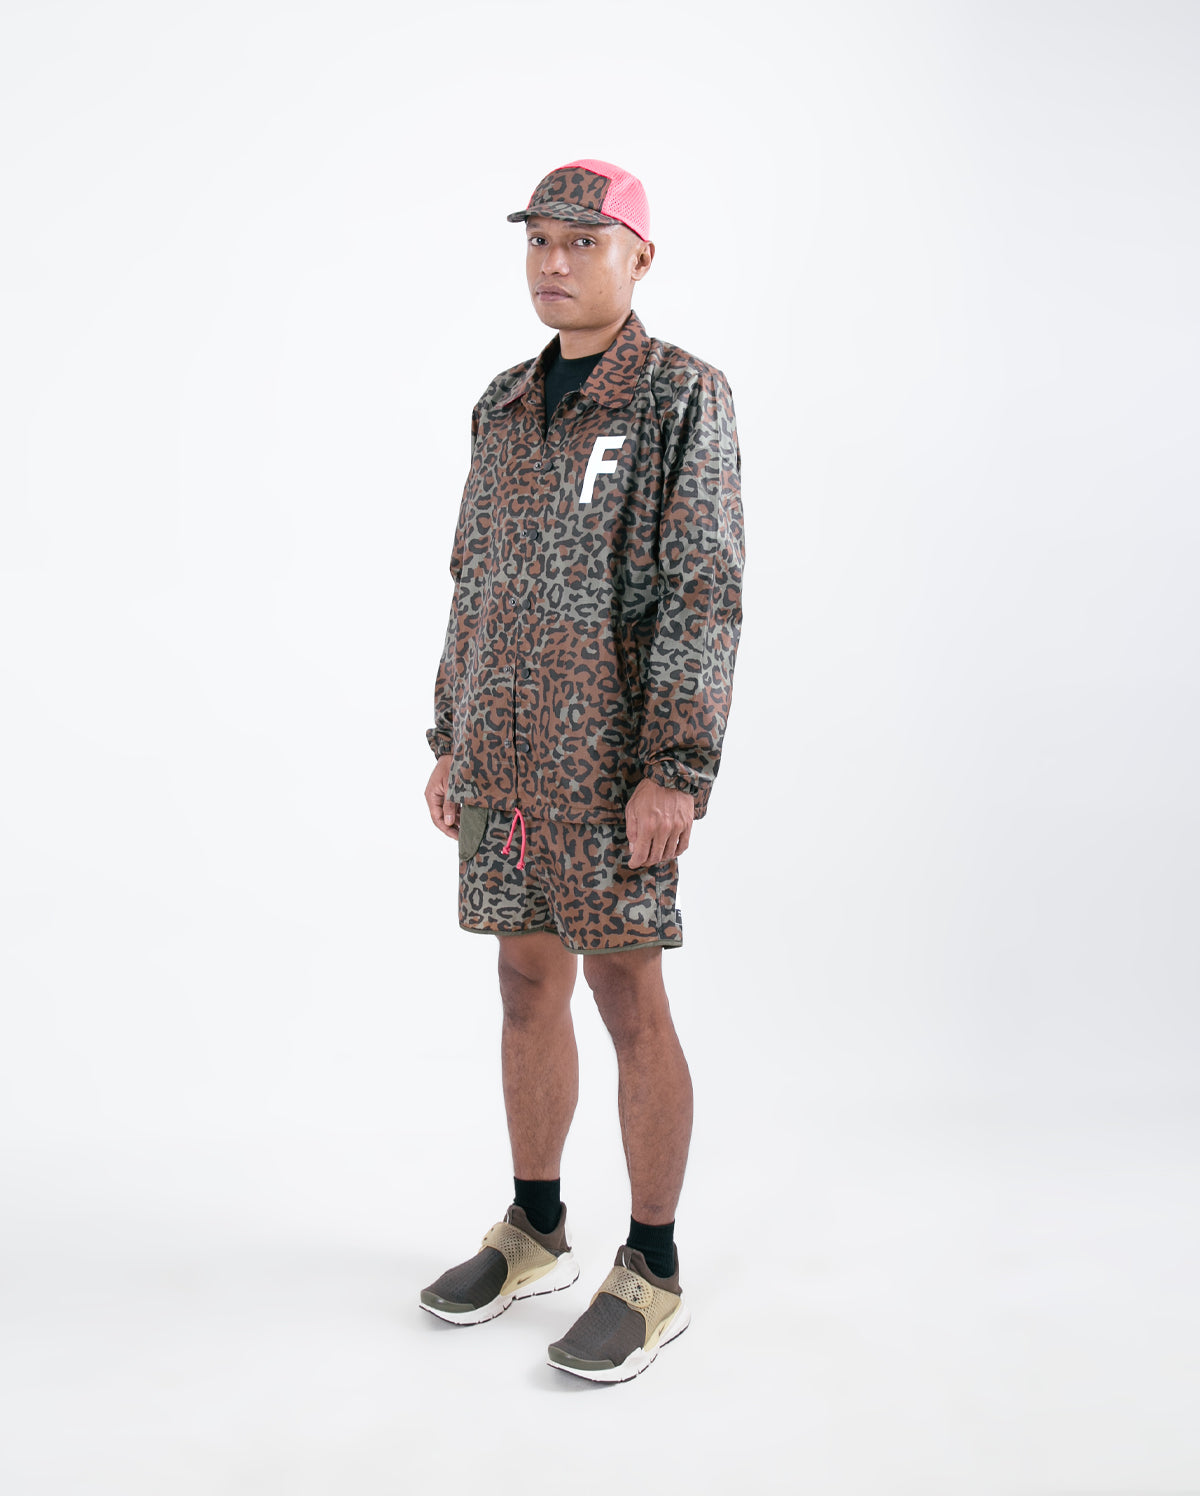 Footurama / Taka - Zaire Leopard Coach Jacket